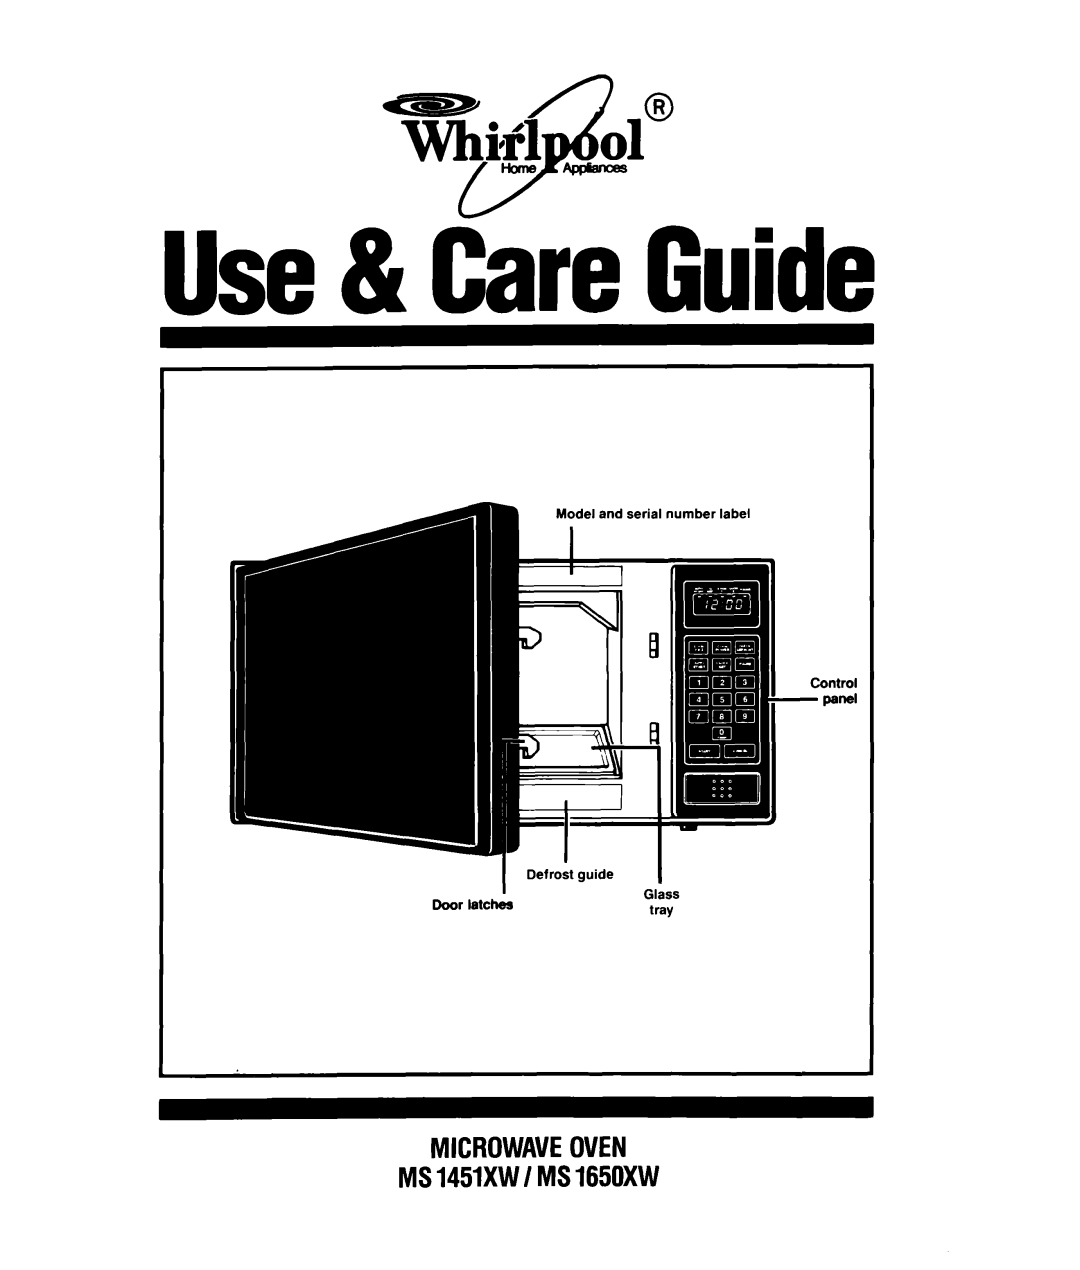 Whirlpool manual Use& Ciri Guide, VhiFl ol@ 4a, MICROWAVEOVEN MS1451XWI MS1650XW 